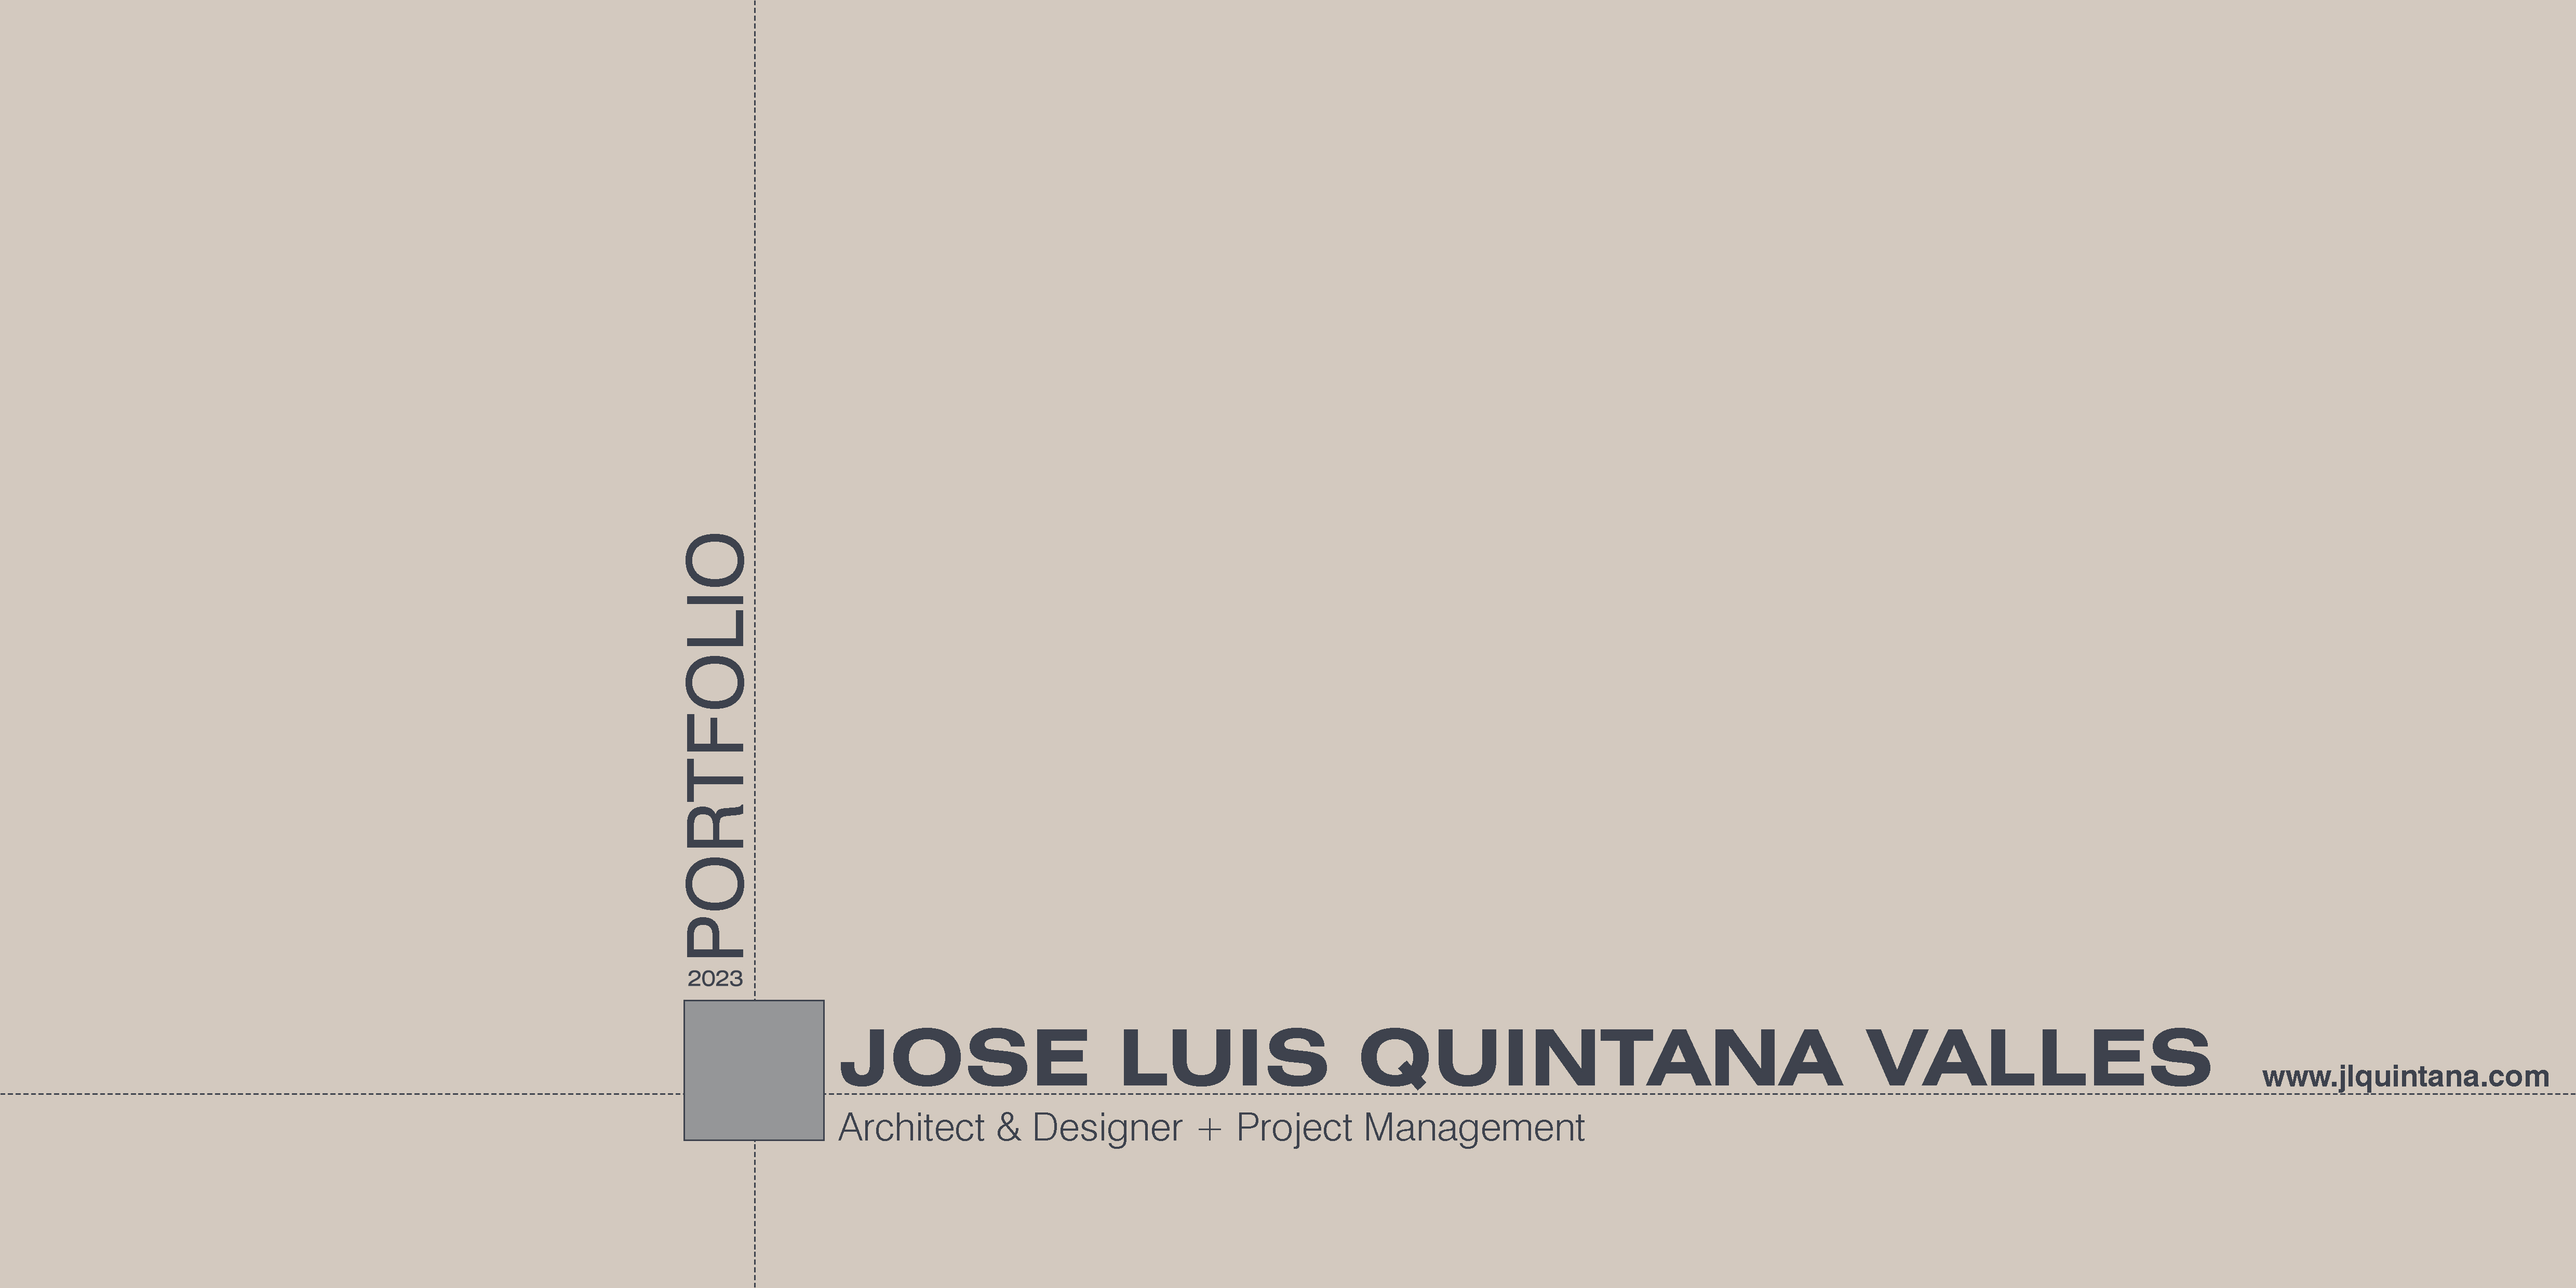 2023 |

I _ | JOSE LUIS QUINTANA VALLES .vosumnen

Architect & Designer + Project Management